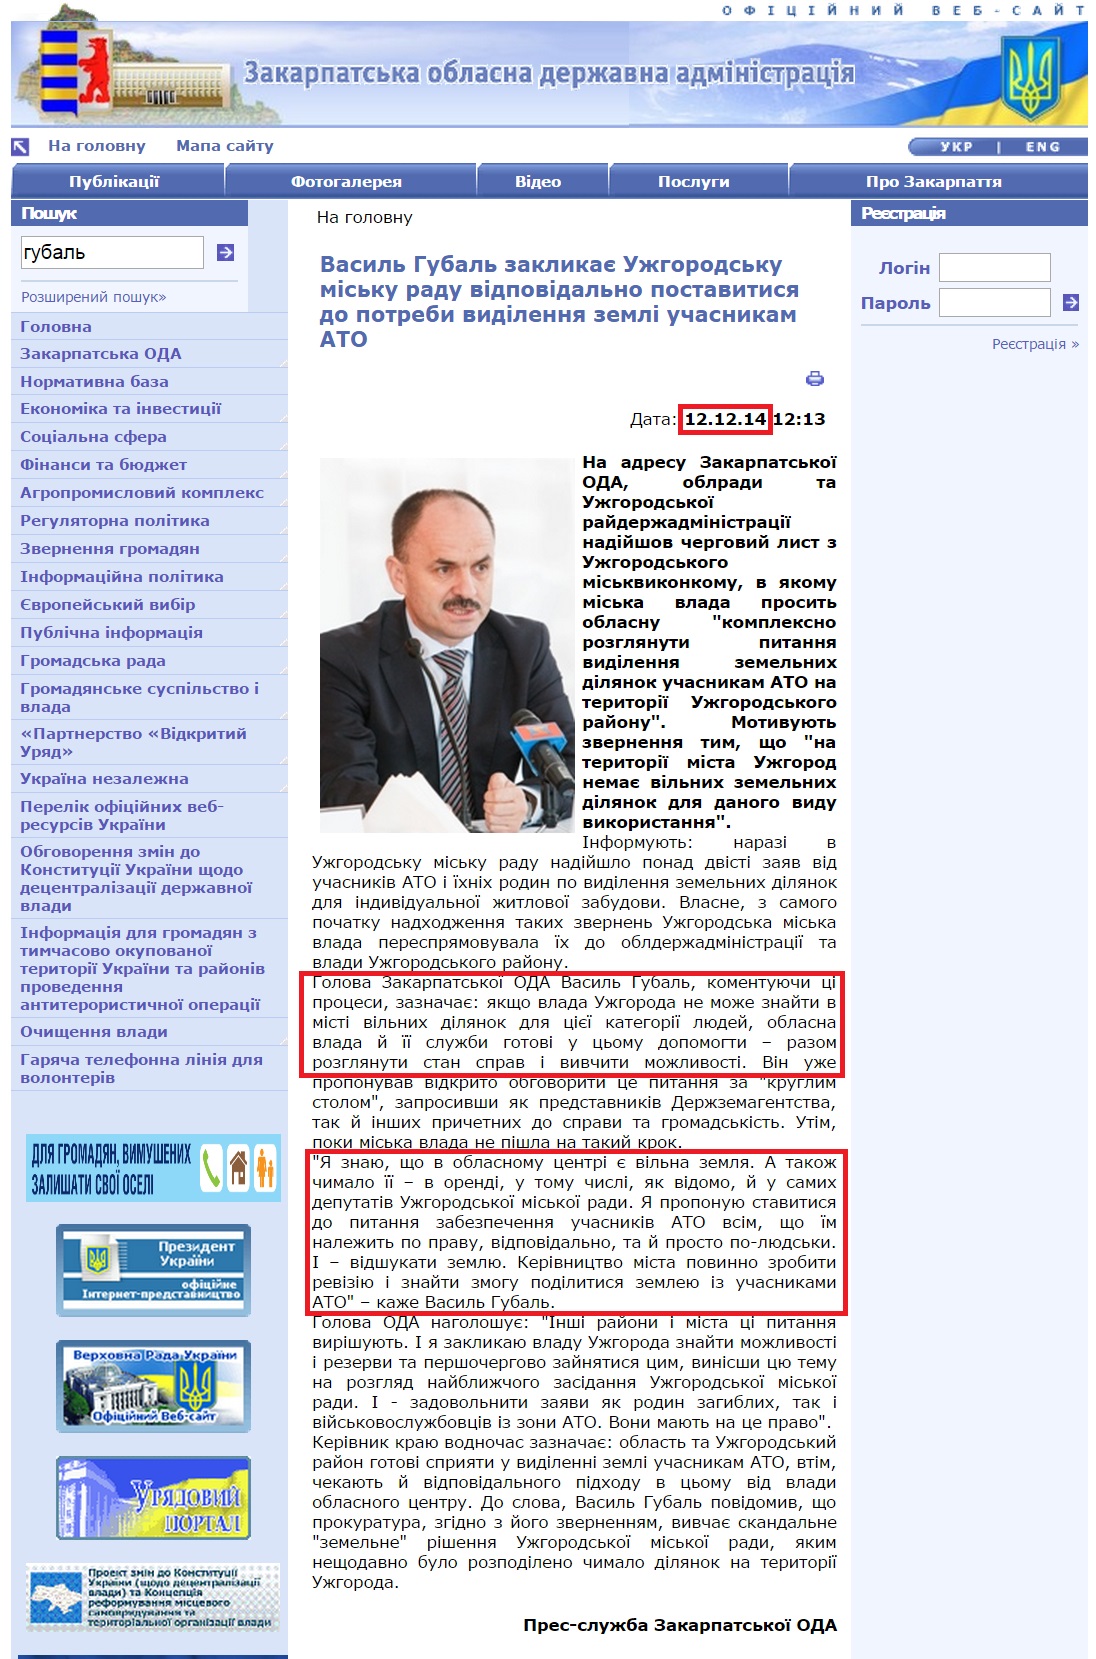 http://www.carpathia.gov.ua/ua/publication/content/10436.htm?lightWords=%D0%B3%D1%83%D0%B1%D0%B0%D0%BB%D1%8C